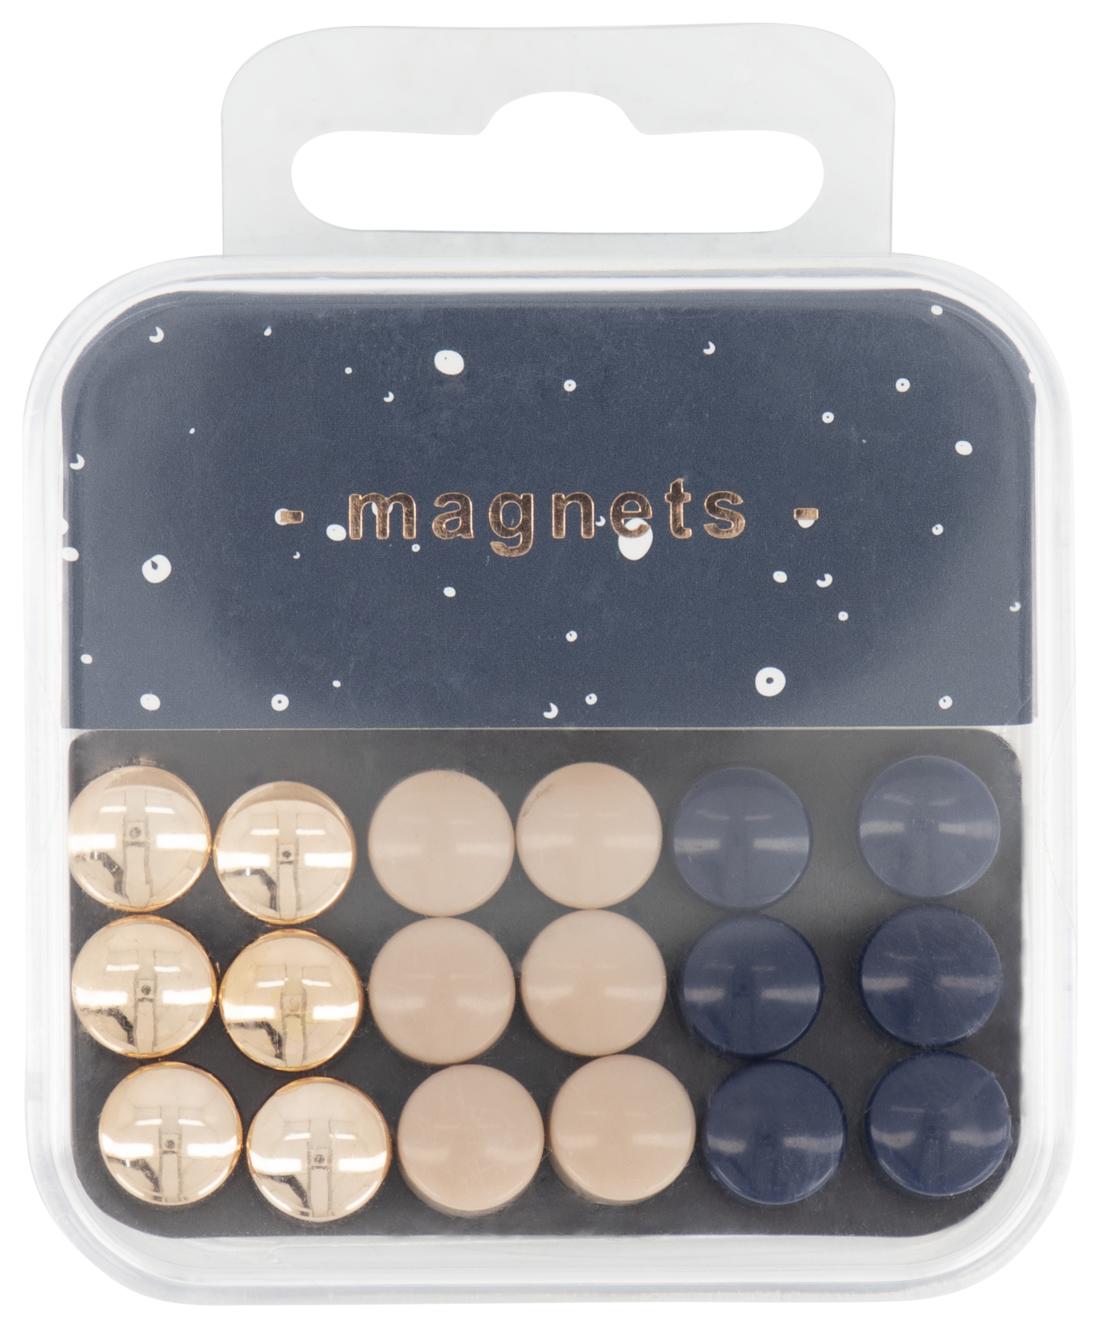 Macadam Onderzoek rechtop mini magneten - 18 stuks - HEMA